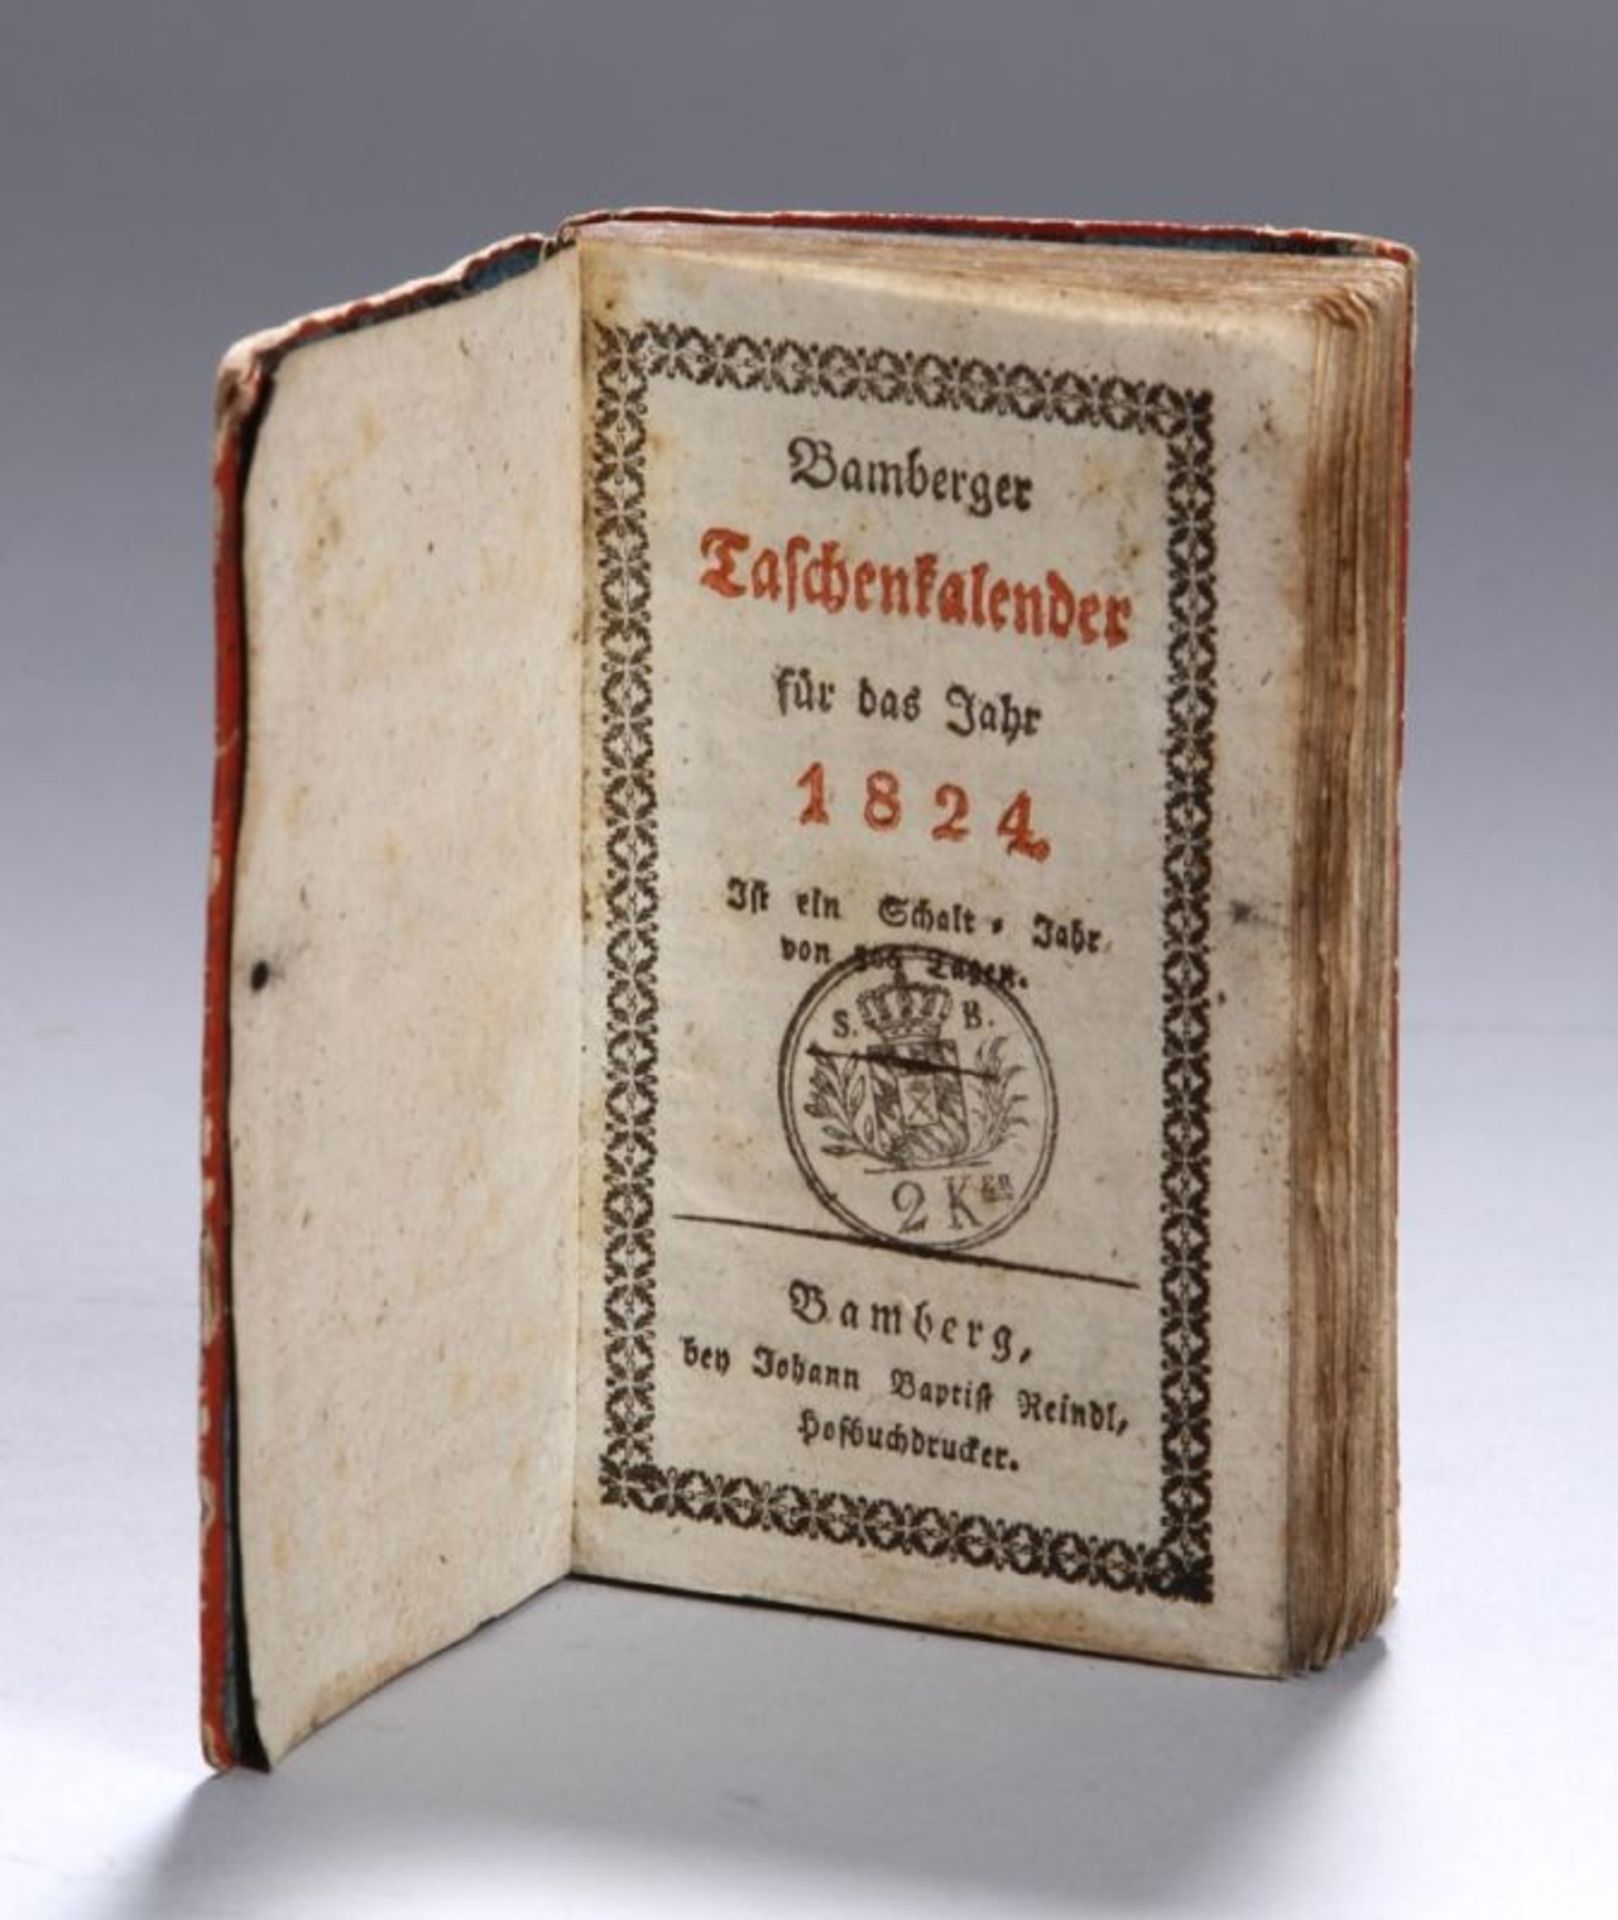 Taschenkalender, 1824, HofbuchdruckerJohan BaptistReindl, Bamberg, Gebrauchsspuren, Rückenteils